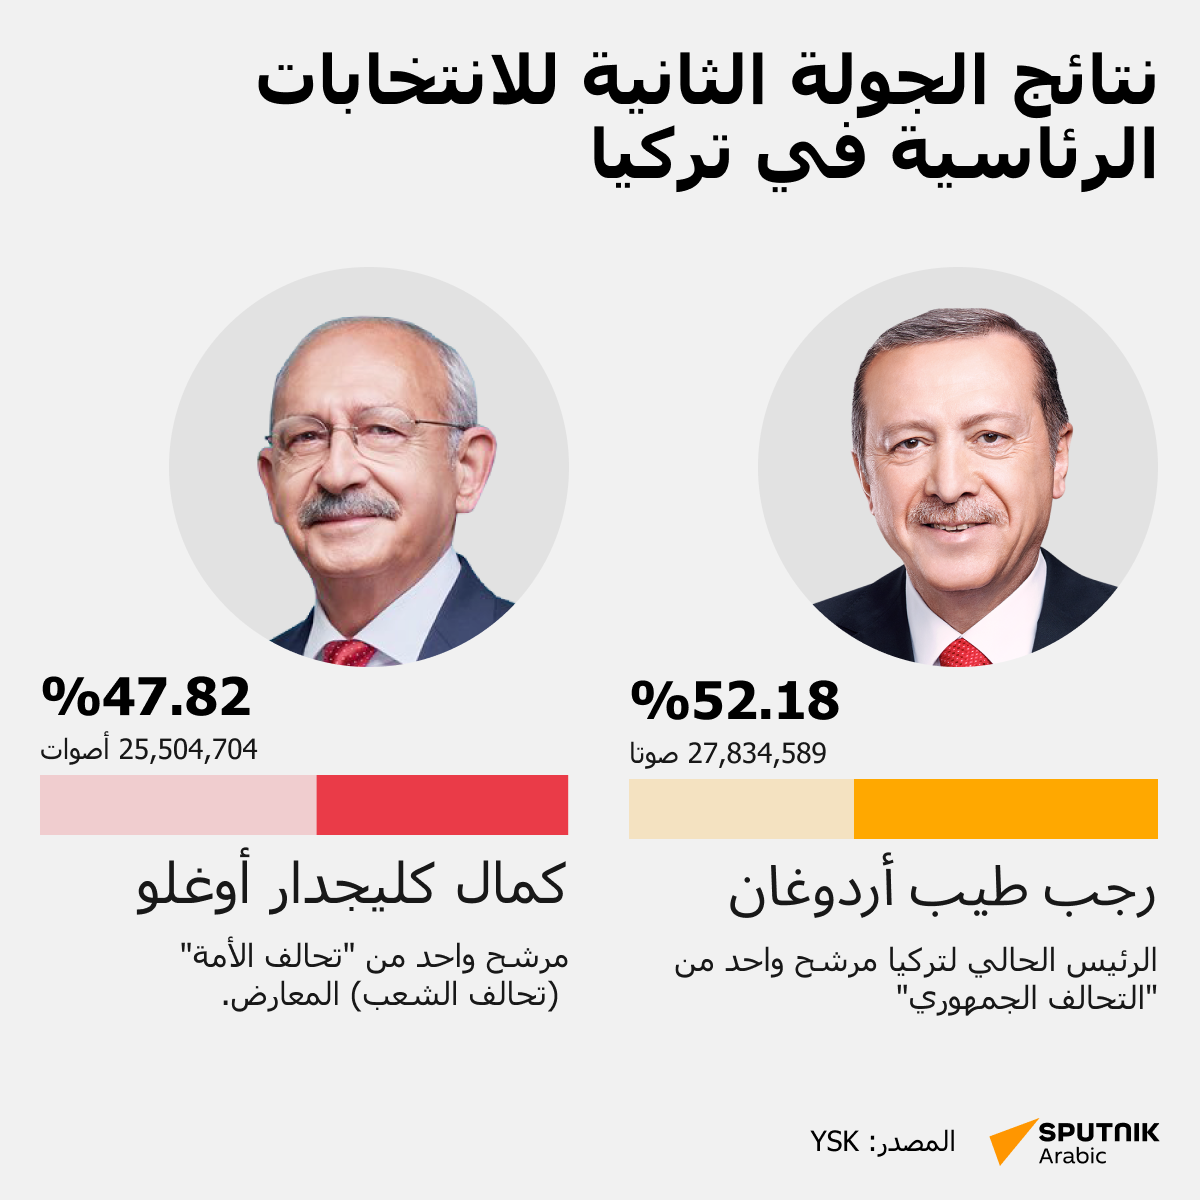 لنتائج الرسمية والنهائية للانتخابات الرئاسية التركية - سبوتنيك عربي